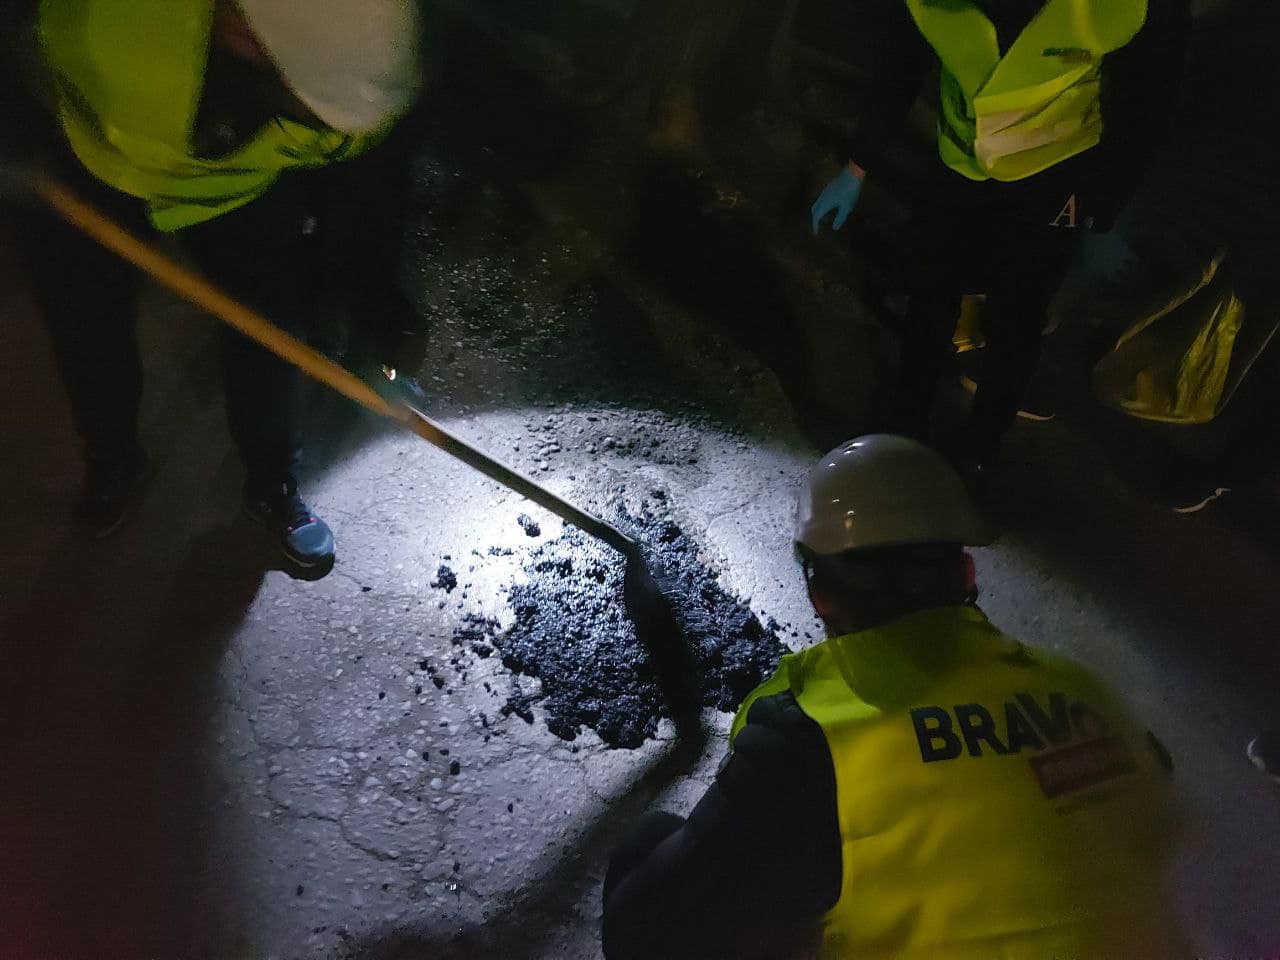 Група приятели ремонтират със собствени средства дупките по улиците в Пловдив